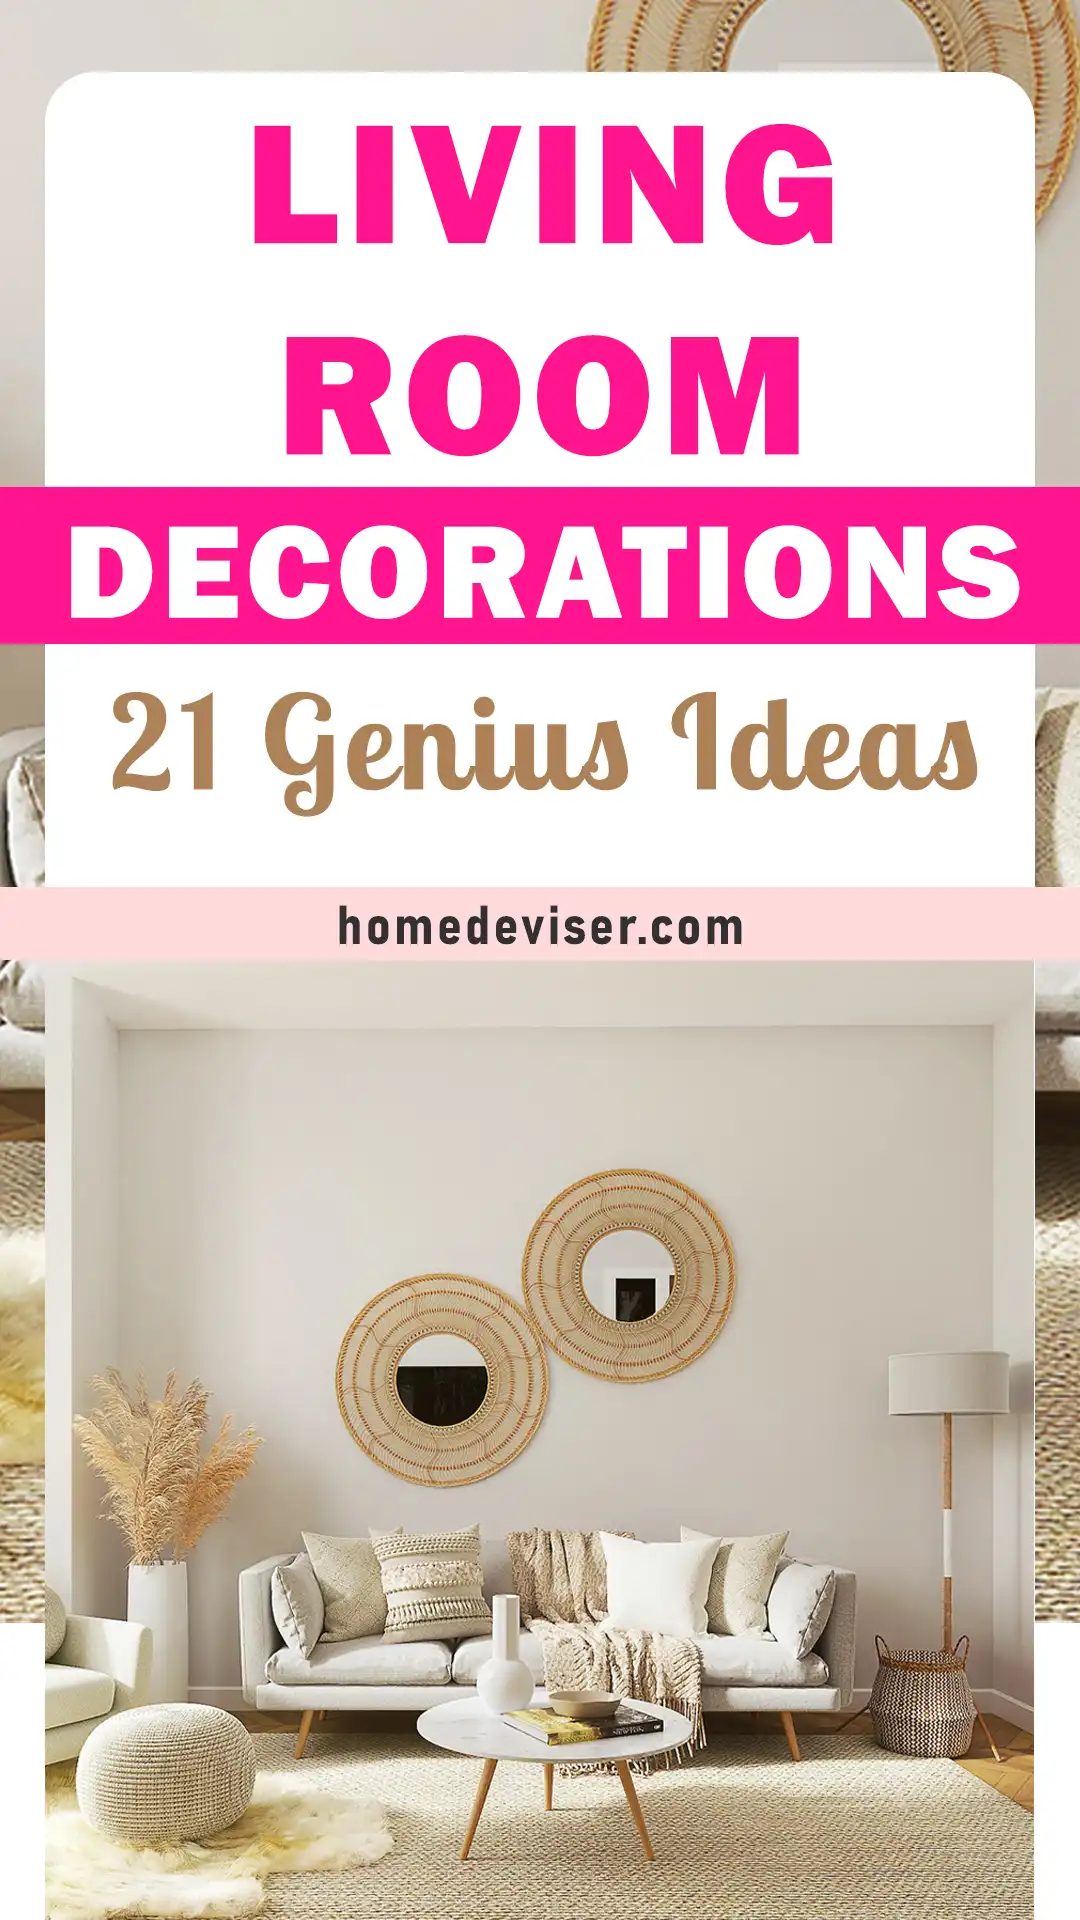 21 Genius Living Room Decor Ideas